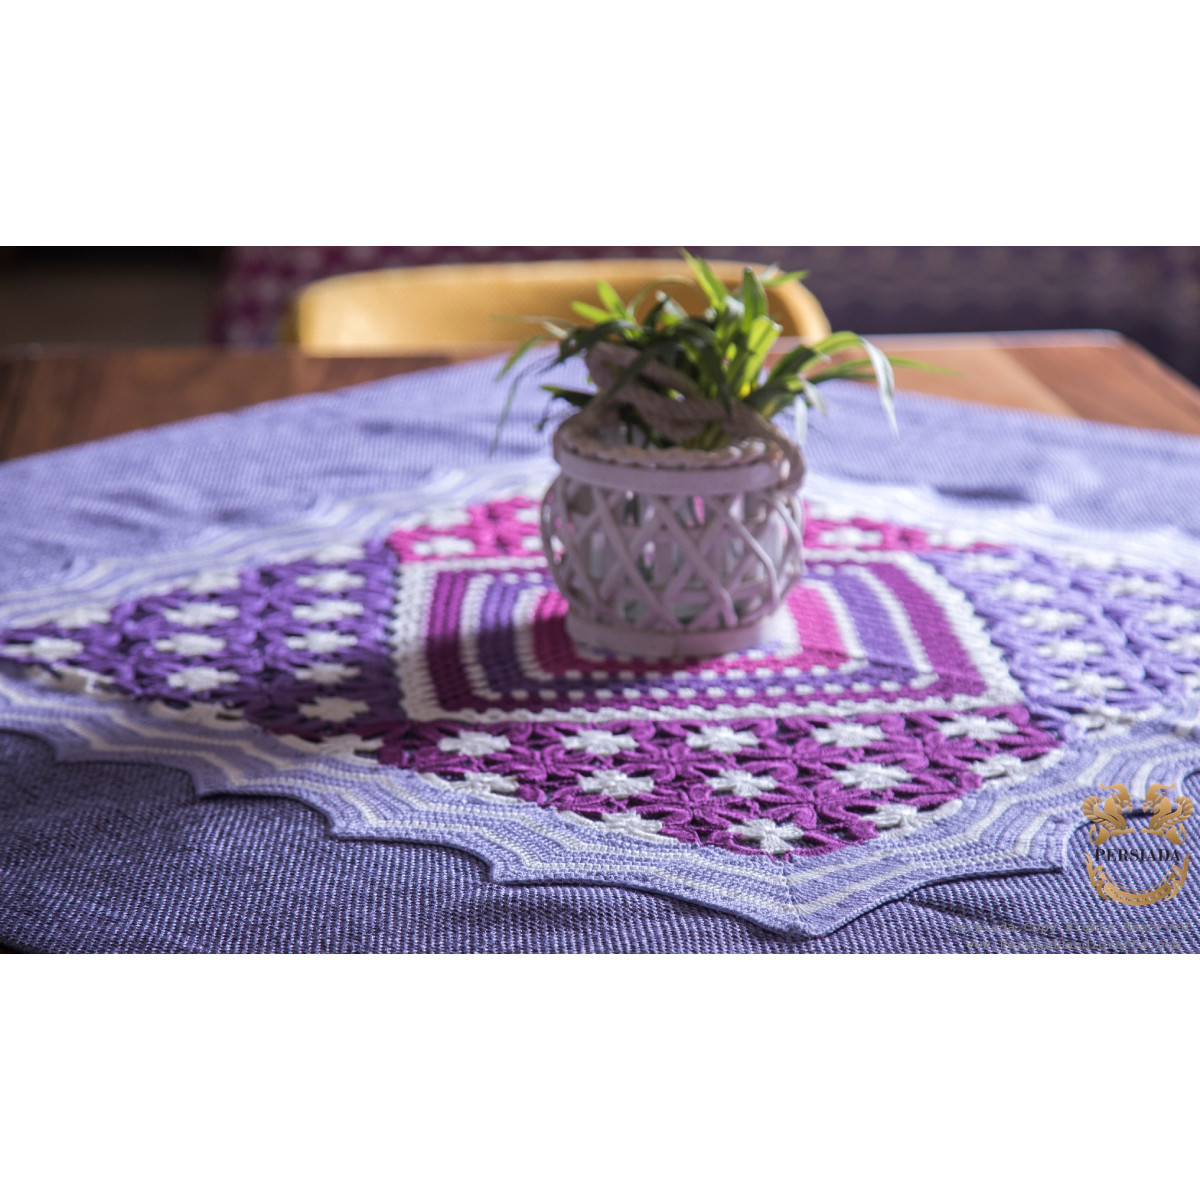 Tablecloth Bedspread Set | Macrame Knotting | HBS1001-Persiada Persian Handicrafts